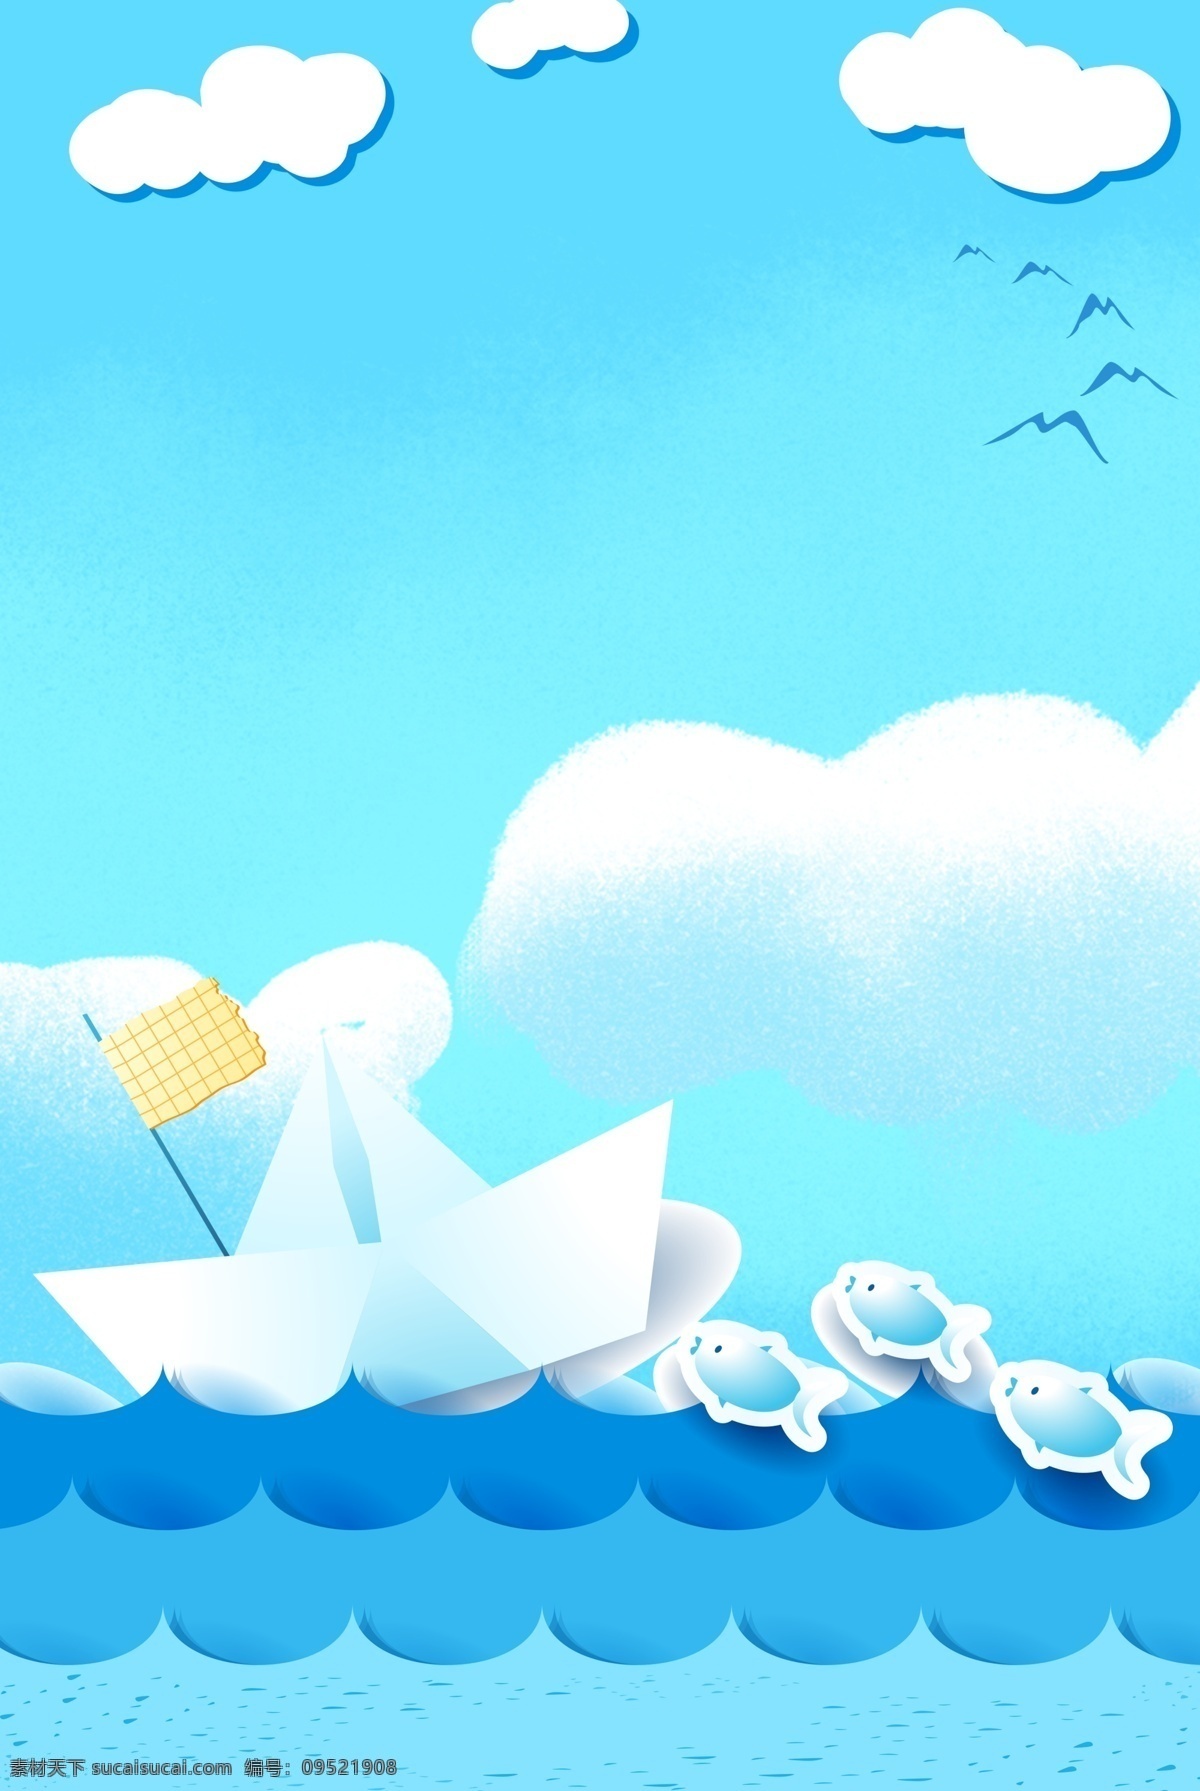 蓝色 简约 清新 夏季 旅游 背景 海浪 蓝天 白云 海燕 卡通